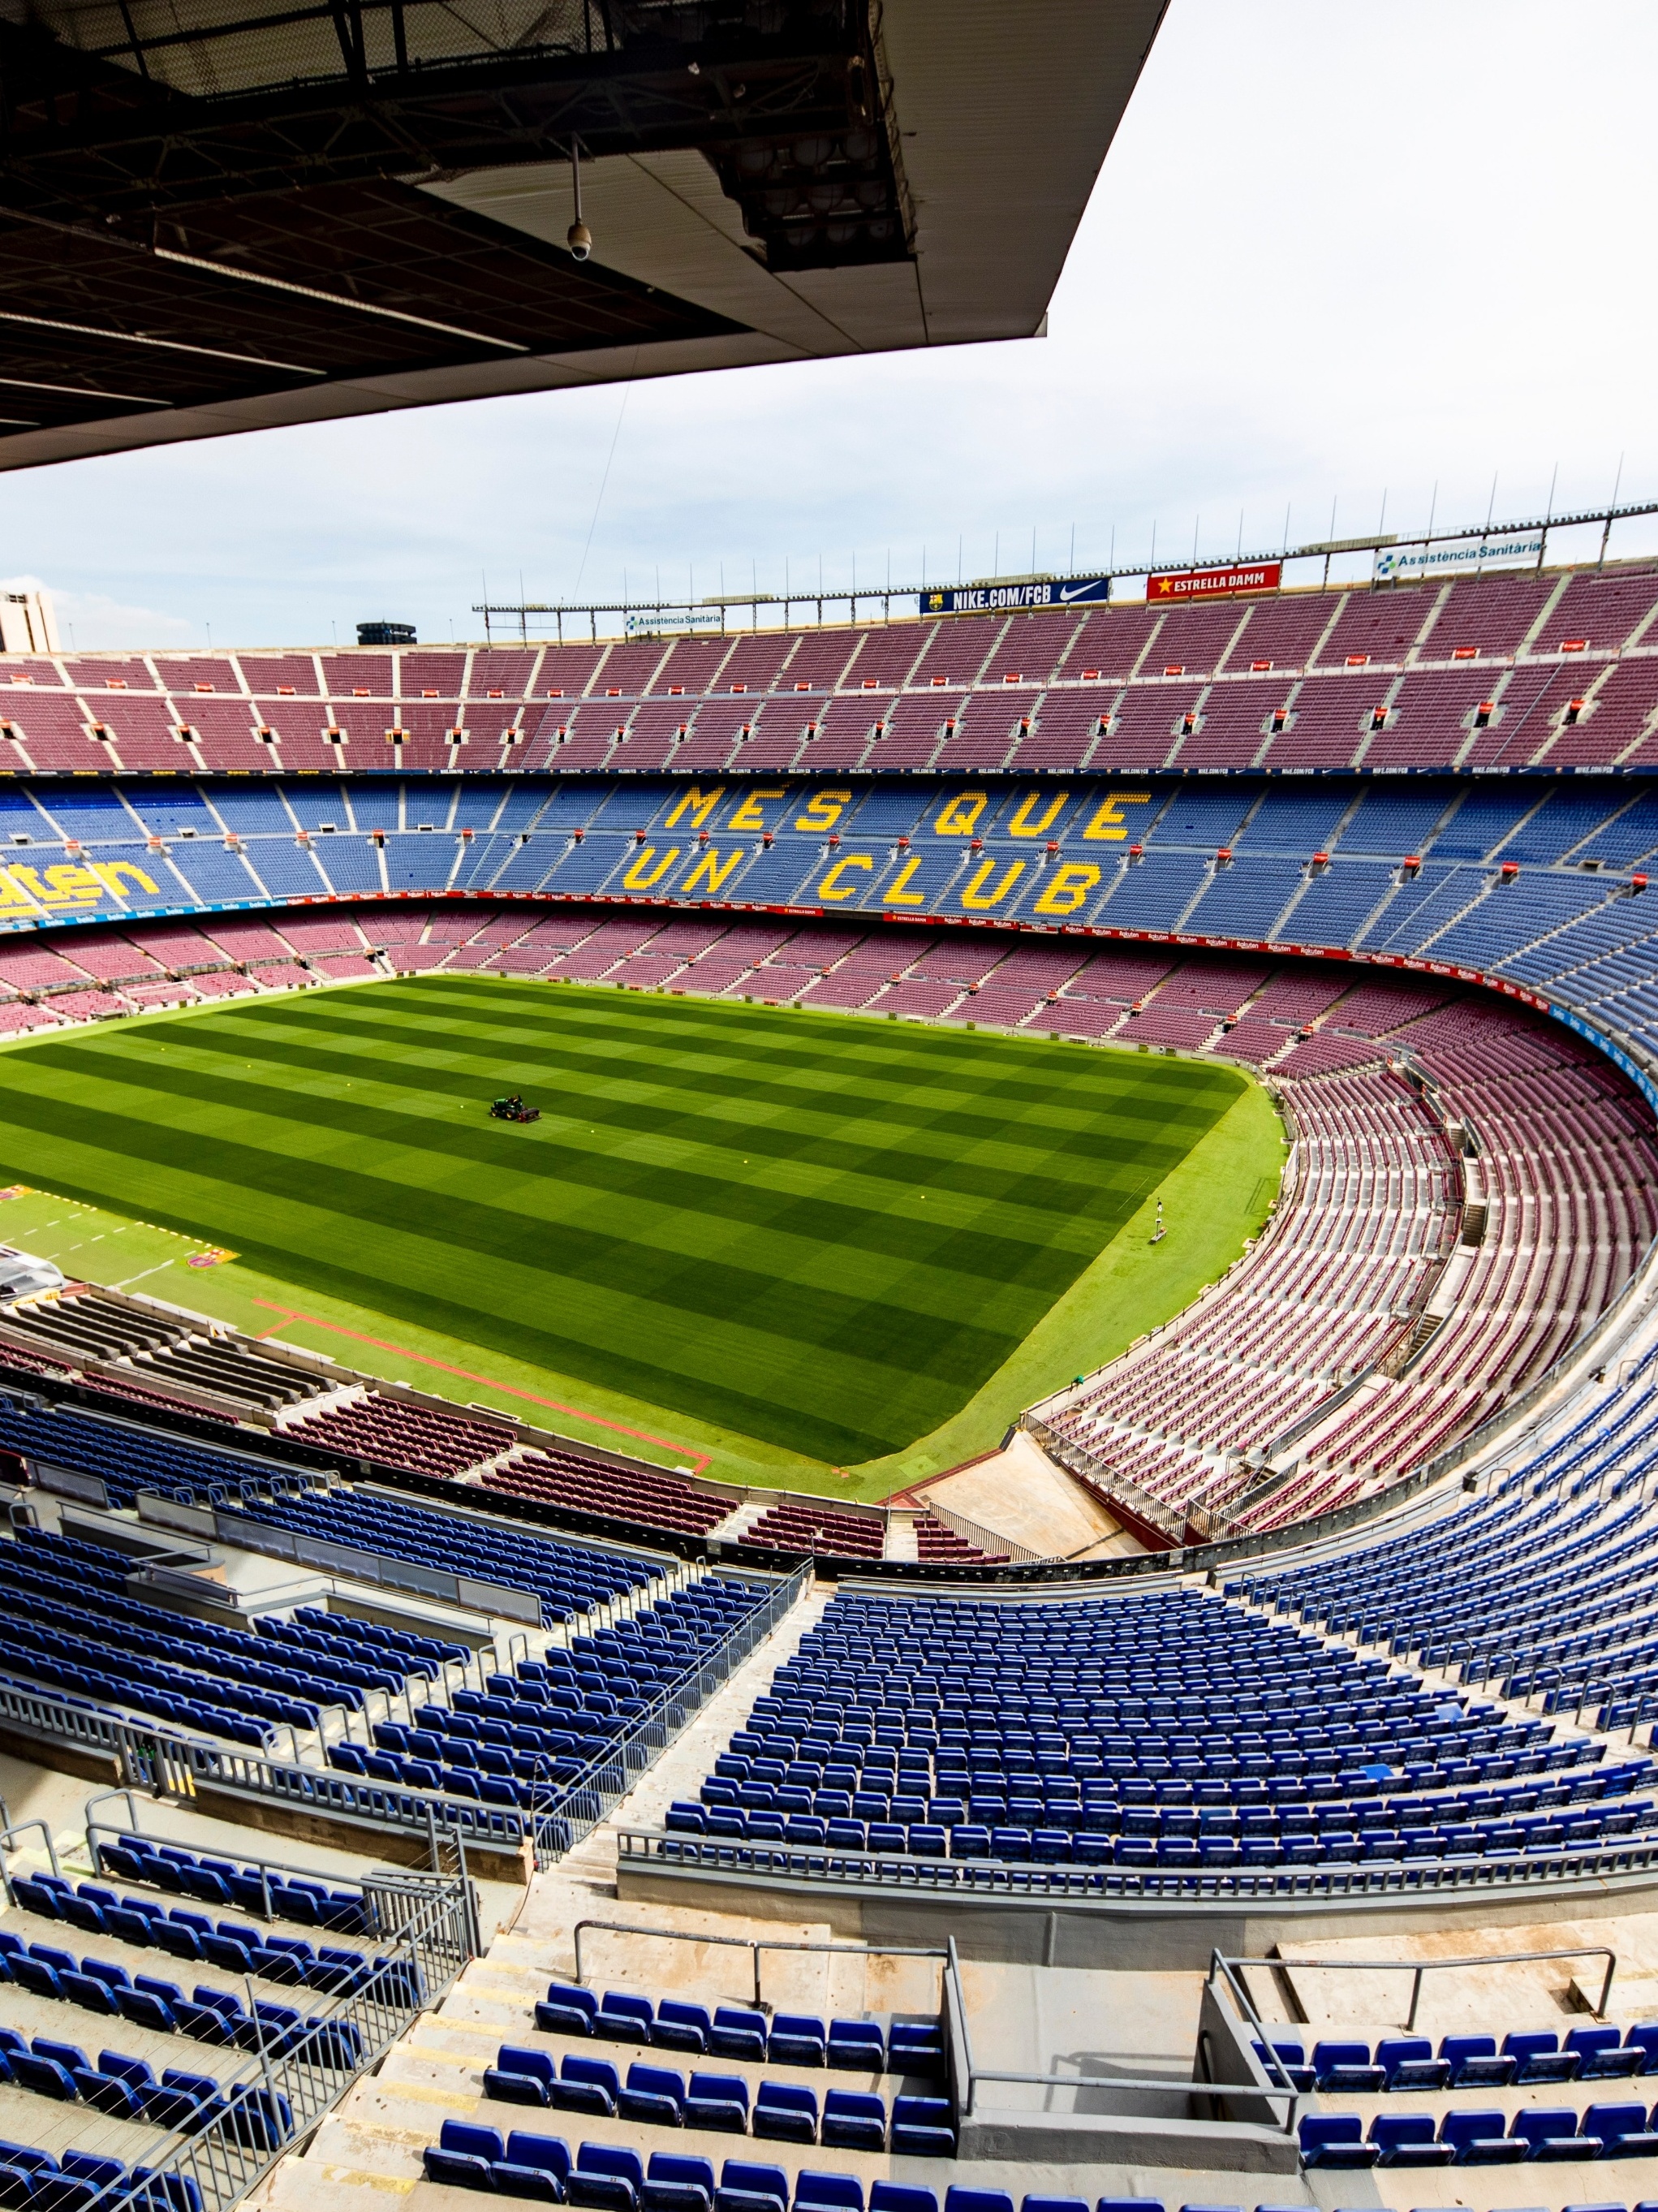 Com Camp Nou em obras, onde o Barcelona joga nesta temporada? - Placar - O  futebol sem barreiras para você